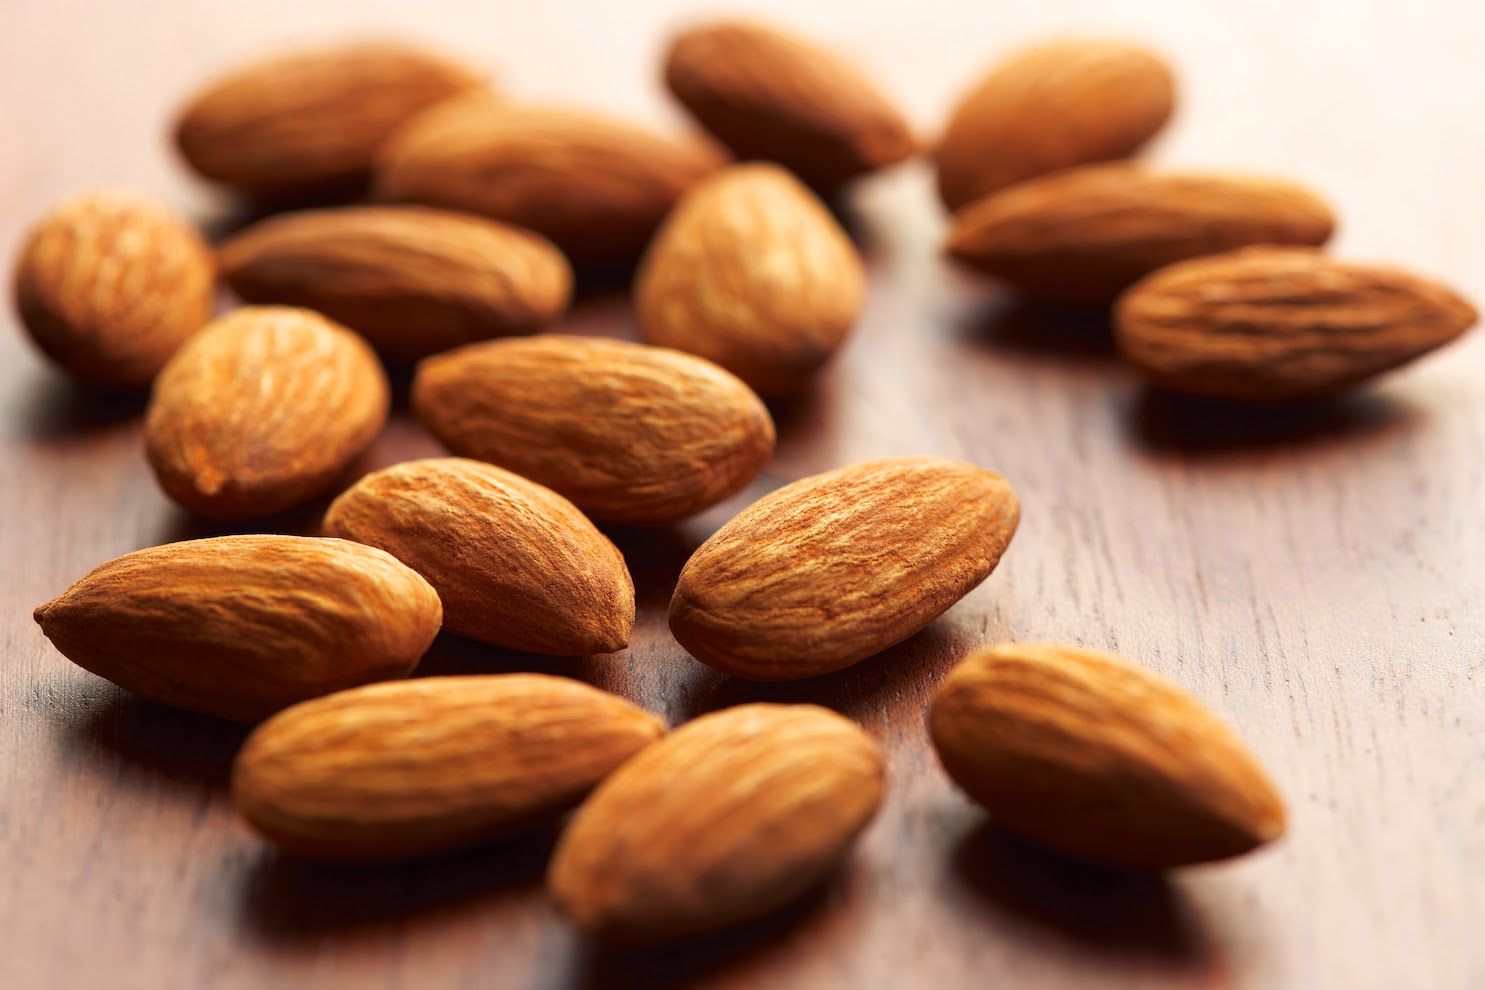 harga kacang almond di carrefour